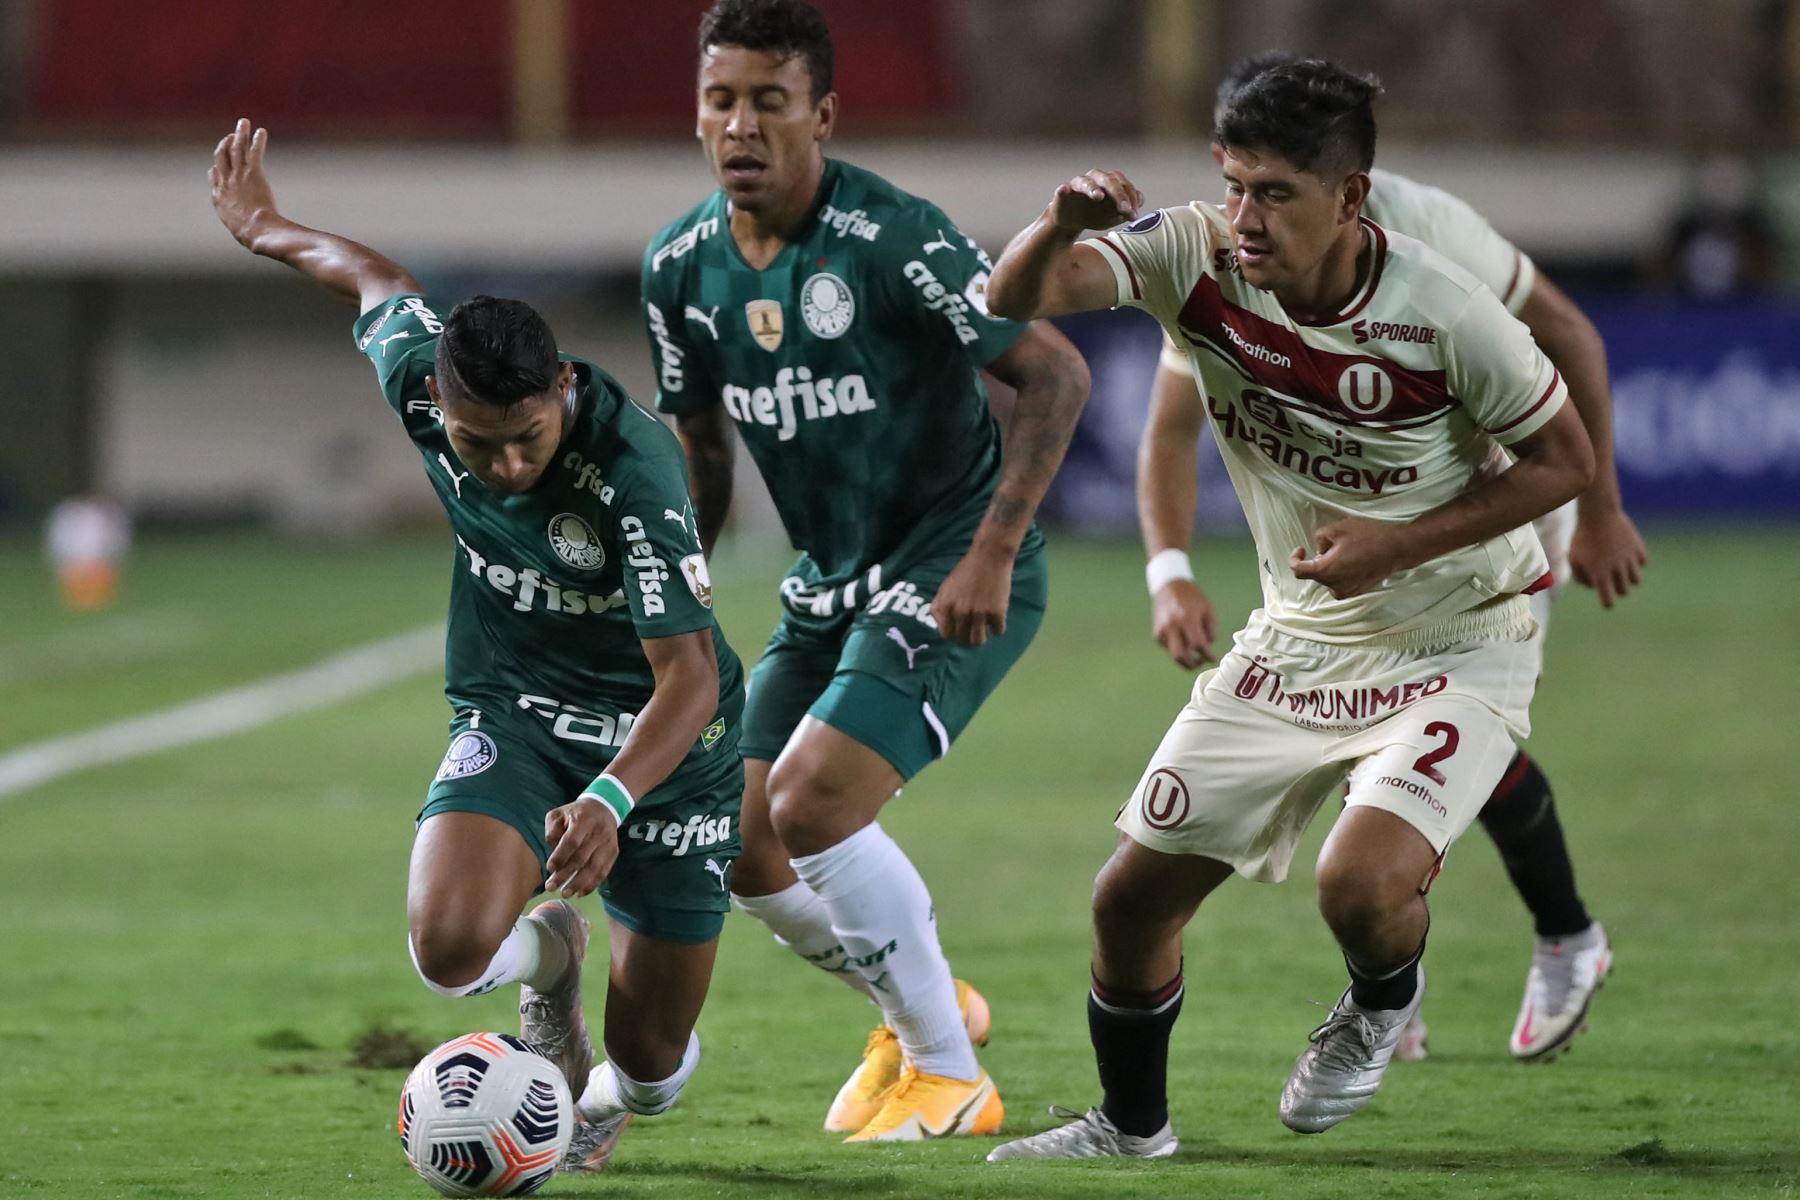 El jugador Rony de  Palmeiras Rony y el jugador de Universitario, Luis Valverde compiten por el balón durante el partido de la fase de grupos del torneo de fútbol Copa Libertadores.
Foto: AFP